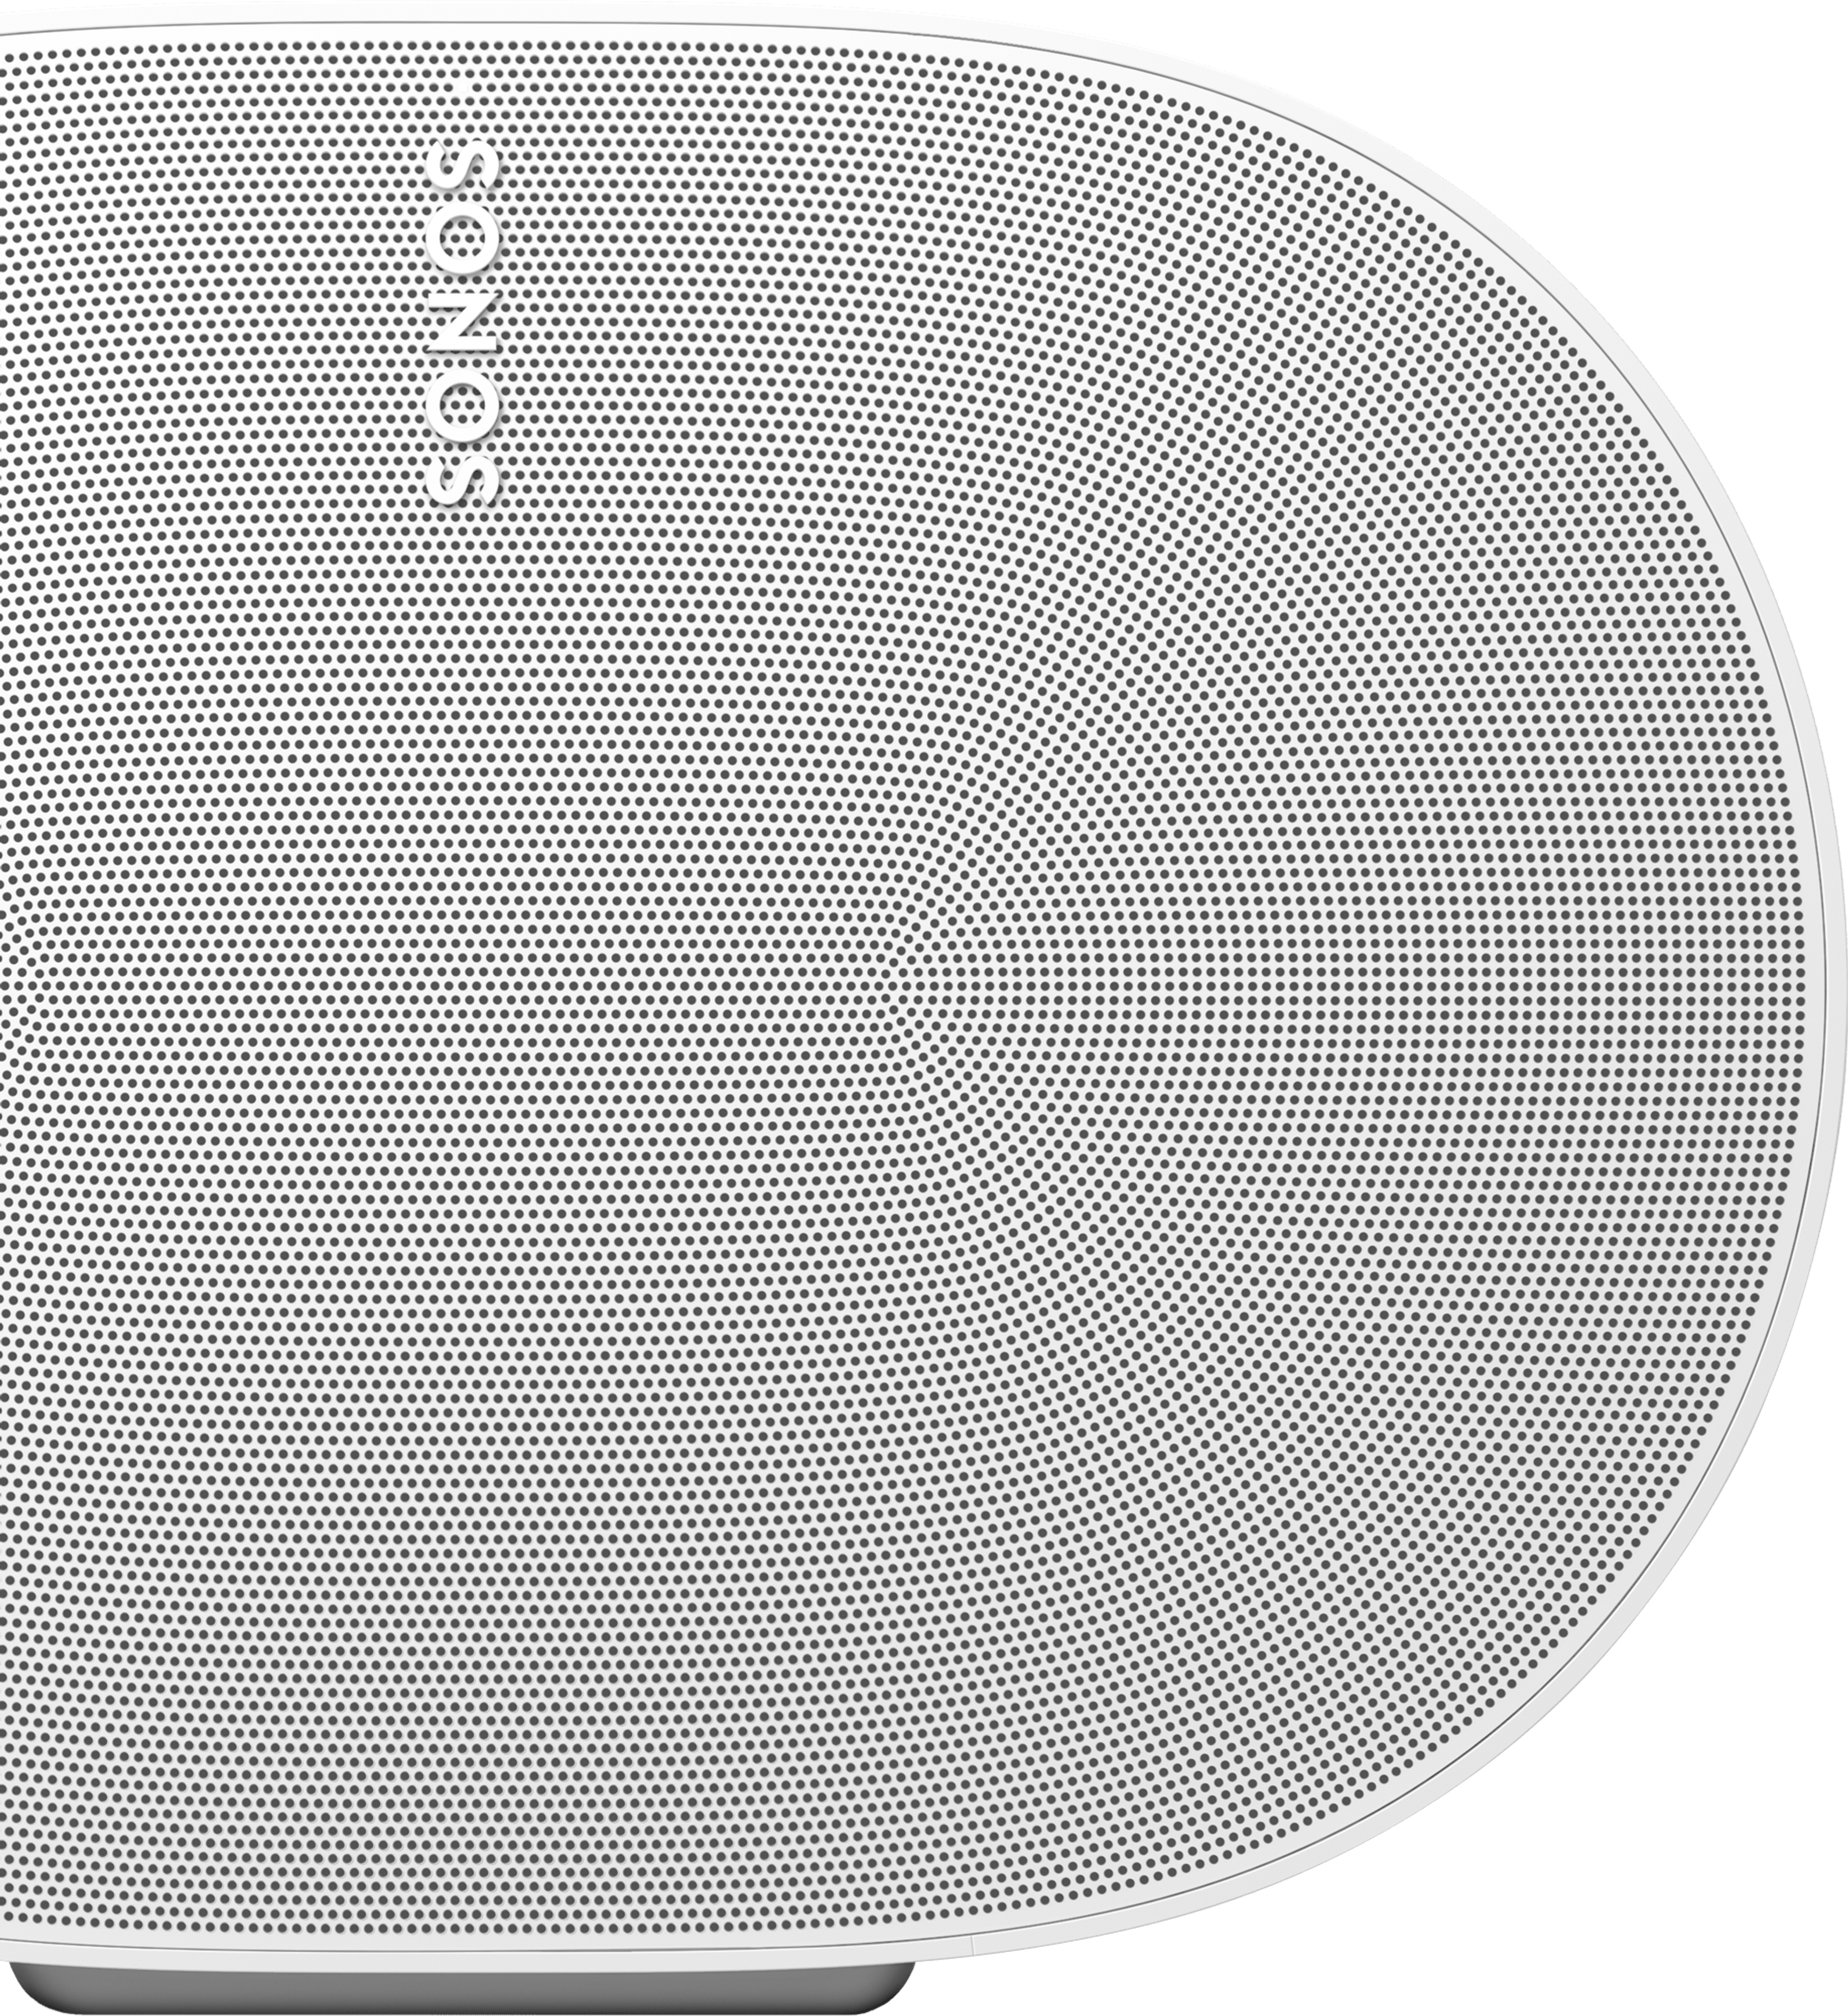 Close-up van de voorkant van een witte Sonos Era 300-speaker